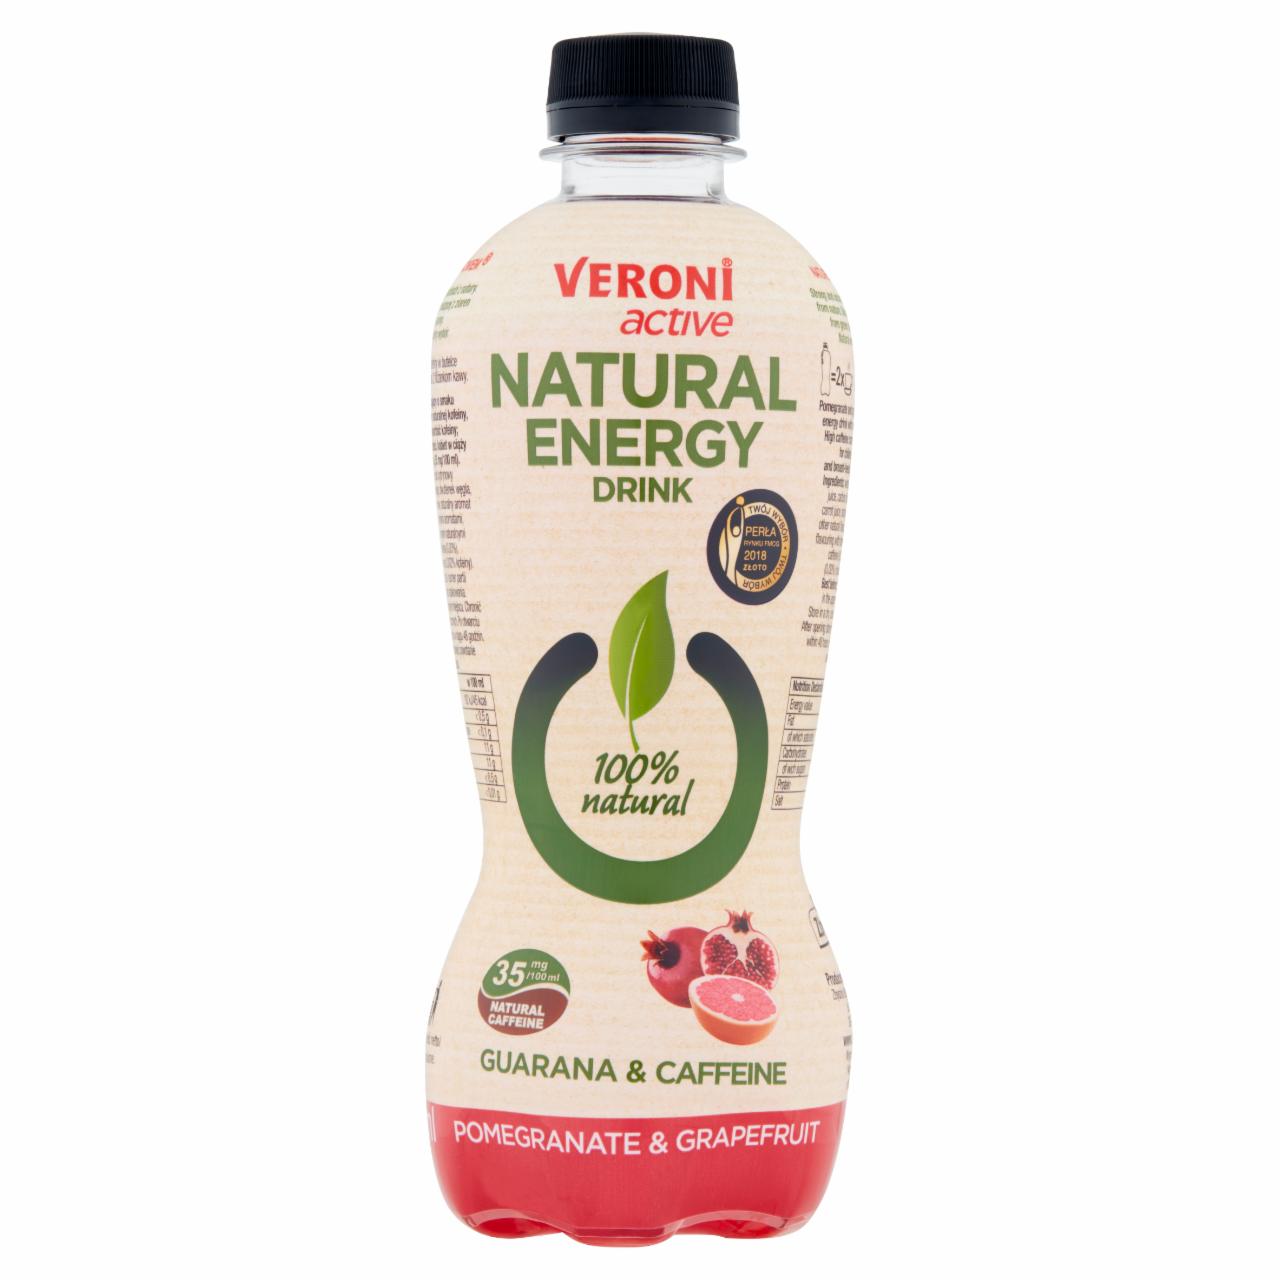 Zdjęcia - Veroni Active Natural Energy Drink Napój gazowany energetyzujący granat & grejpfrut 400 ml